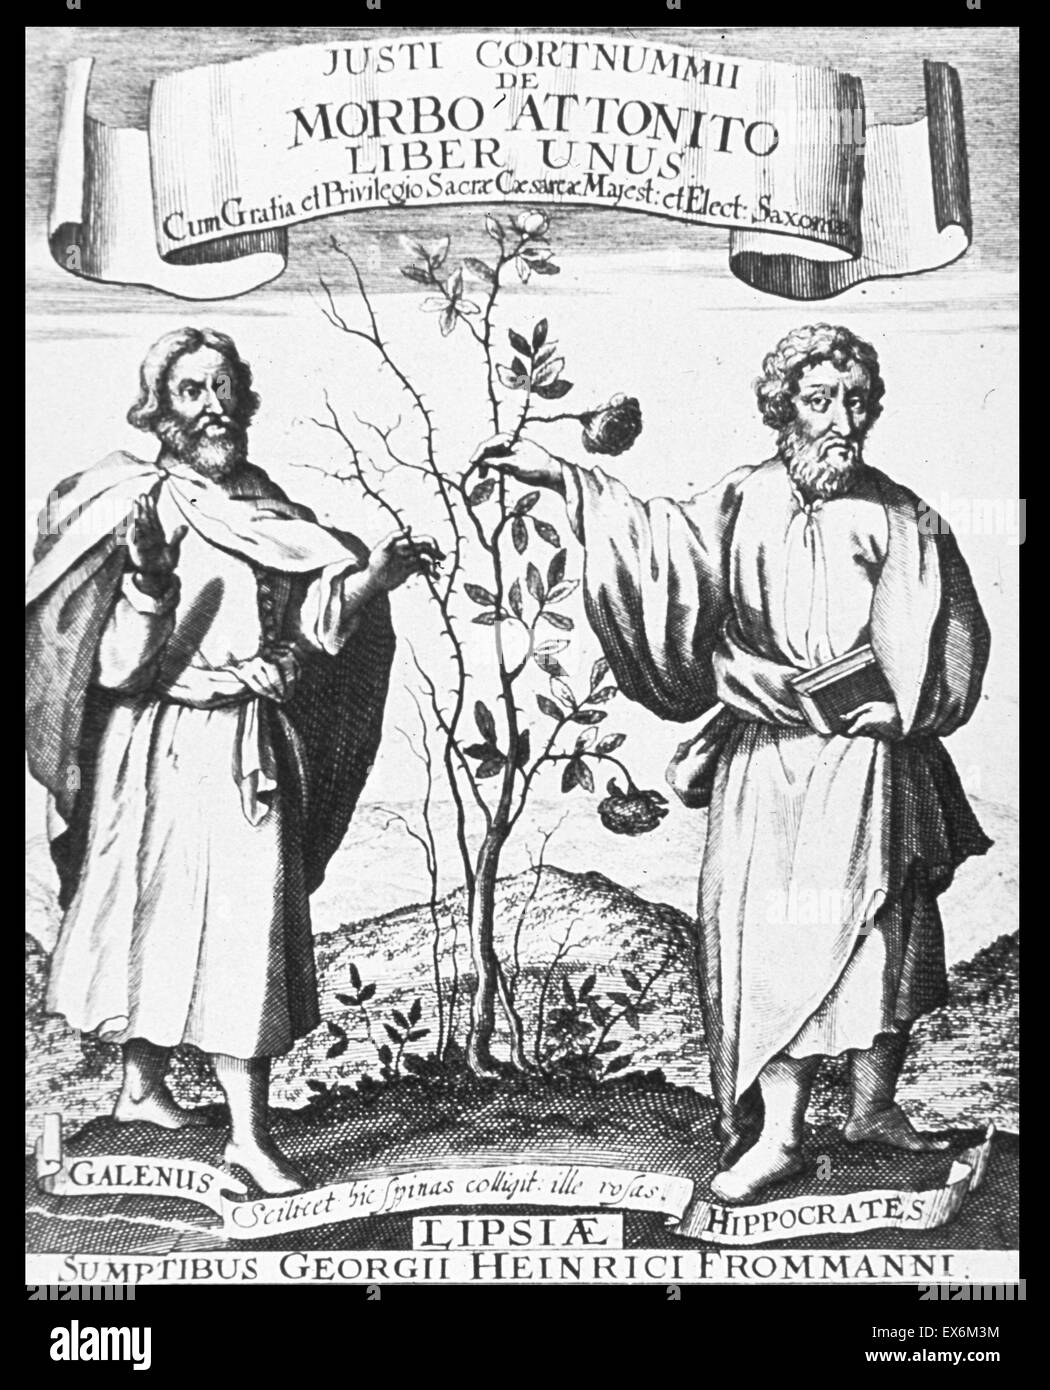 Galen and Hippocrates from the De morbo attonito liber unus ad Hippocraticam sanguinis in corpore humano periodum exaratus, title page 1677 Stock Photo